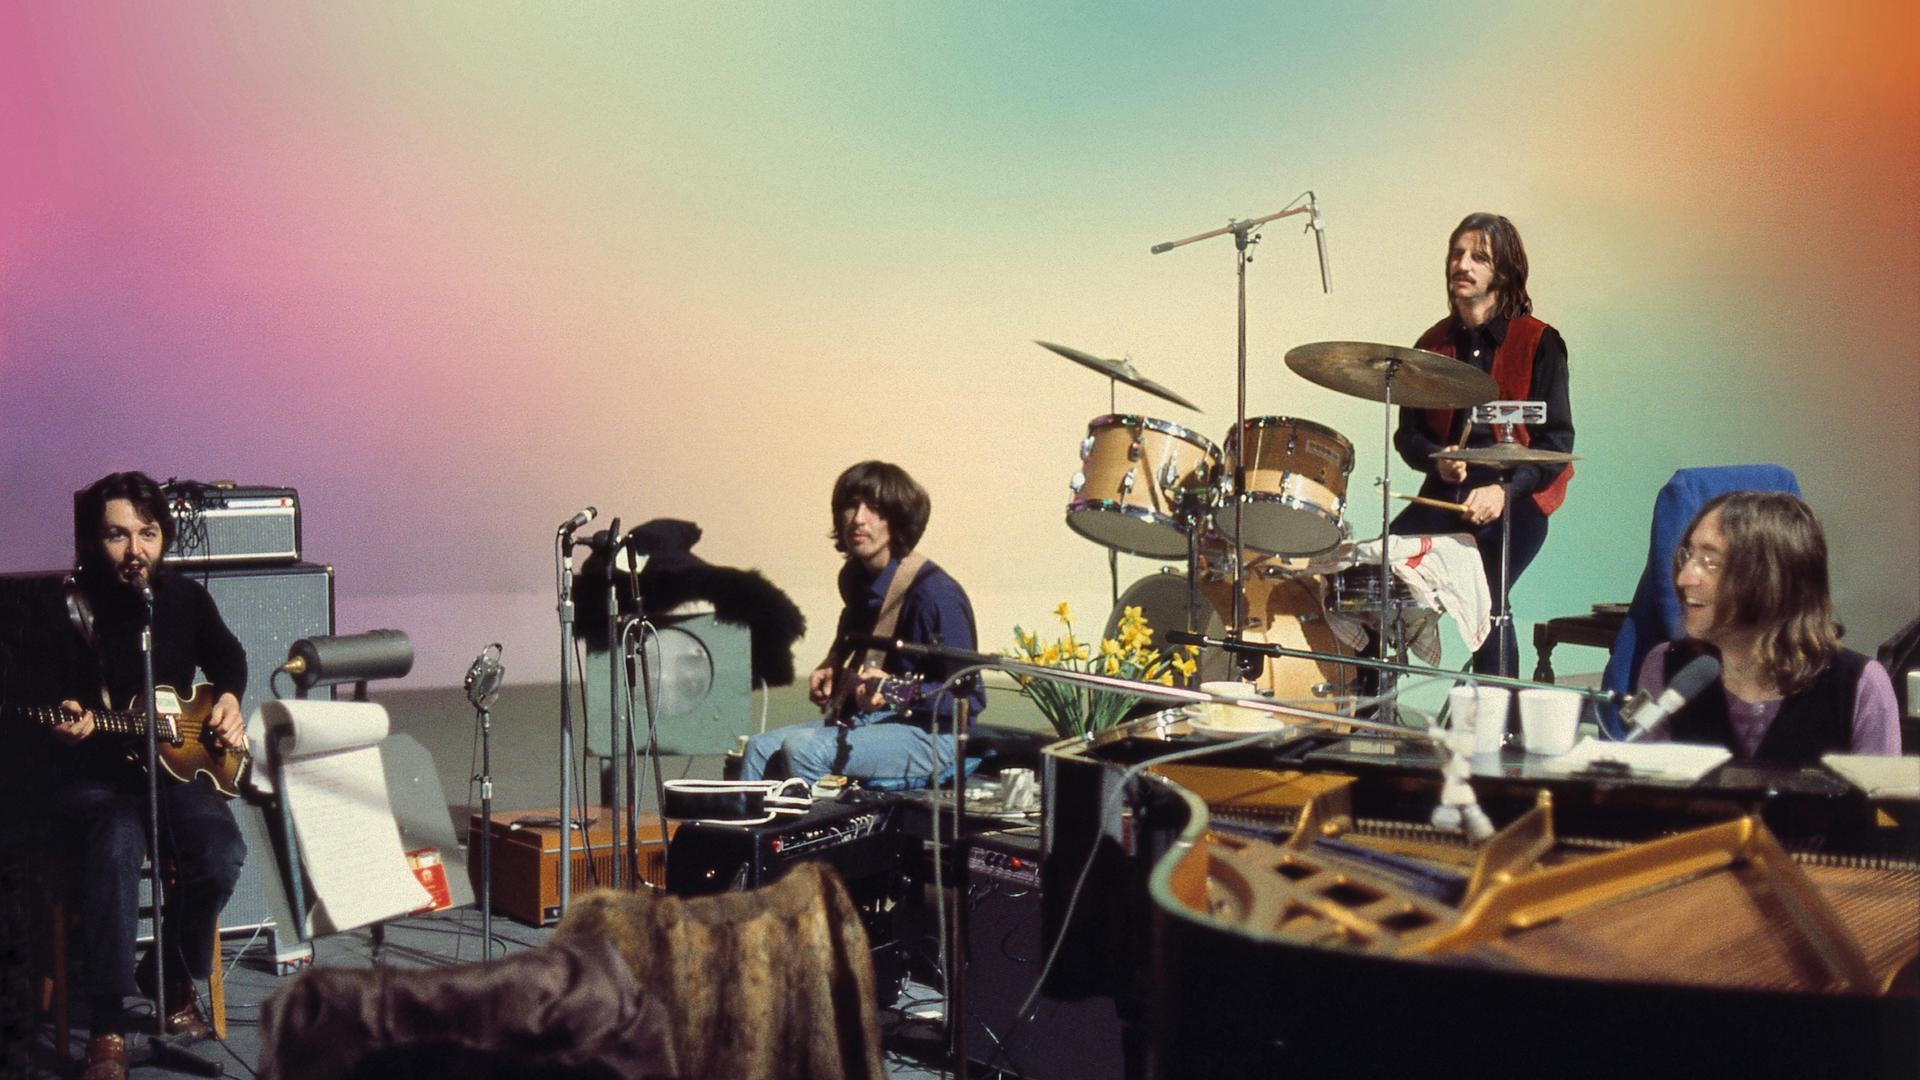 Ringo Starr, Beatle member, Peter Jackson, Beatles documentary, 1920x1080 Full HD Desktop